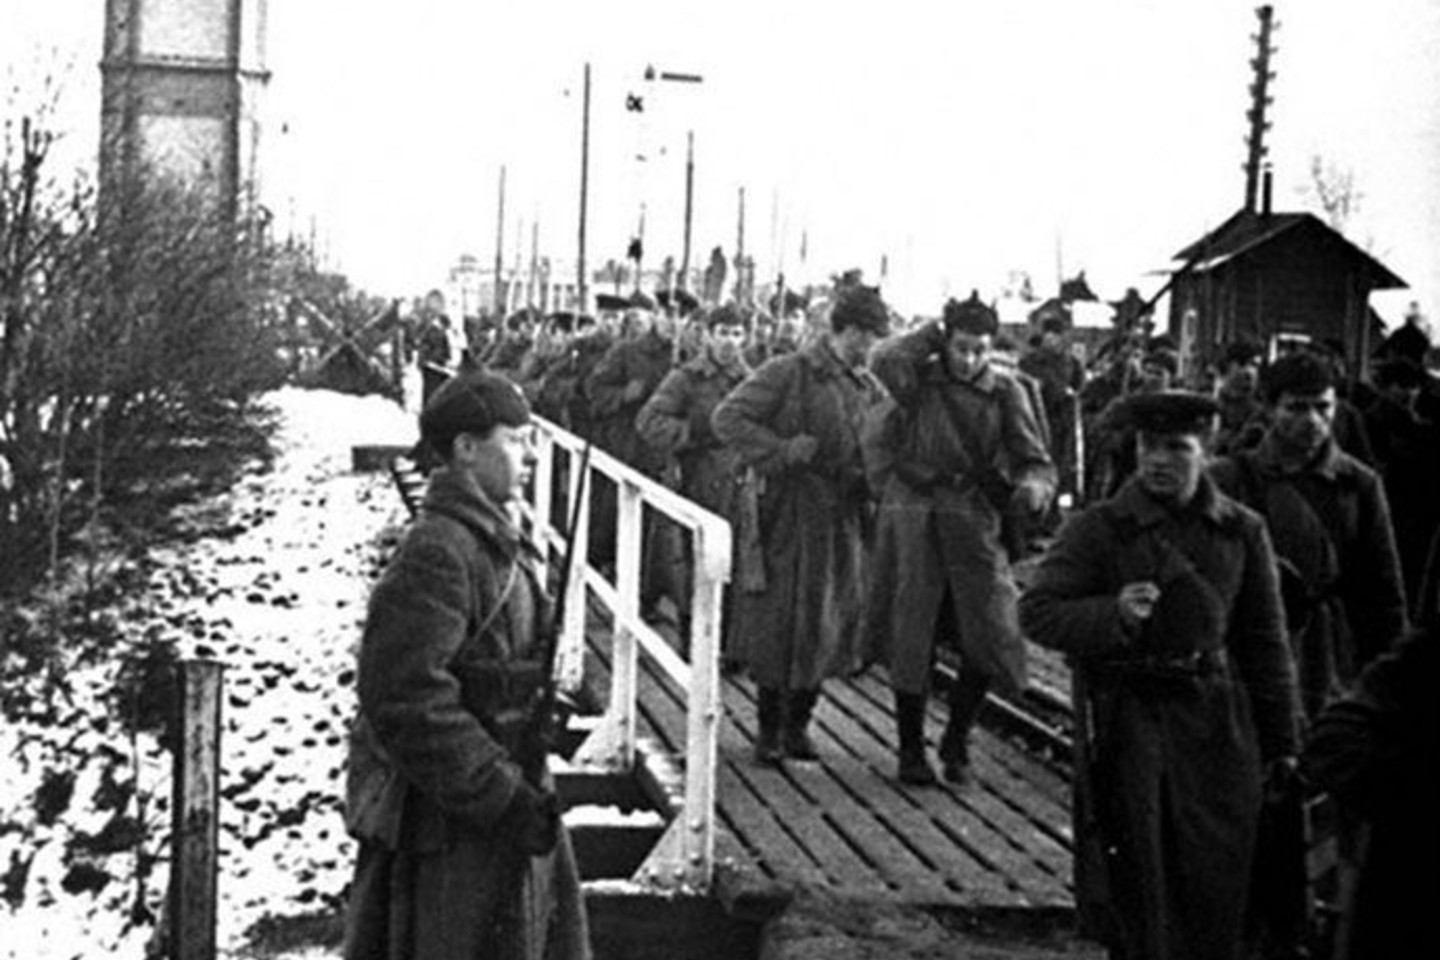 Raudonoji „darbininkų ir valstiečių“ armija pereina Suomijos sieną. Nuotaika buvo pakili. Dažnas tikėjosi Naujuosius metus švęsiąs Helsinkyje.<br>Knygos iliustracija